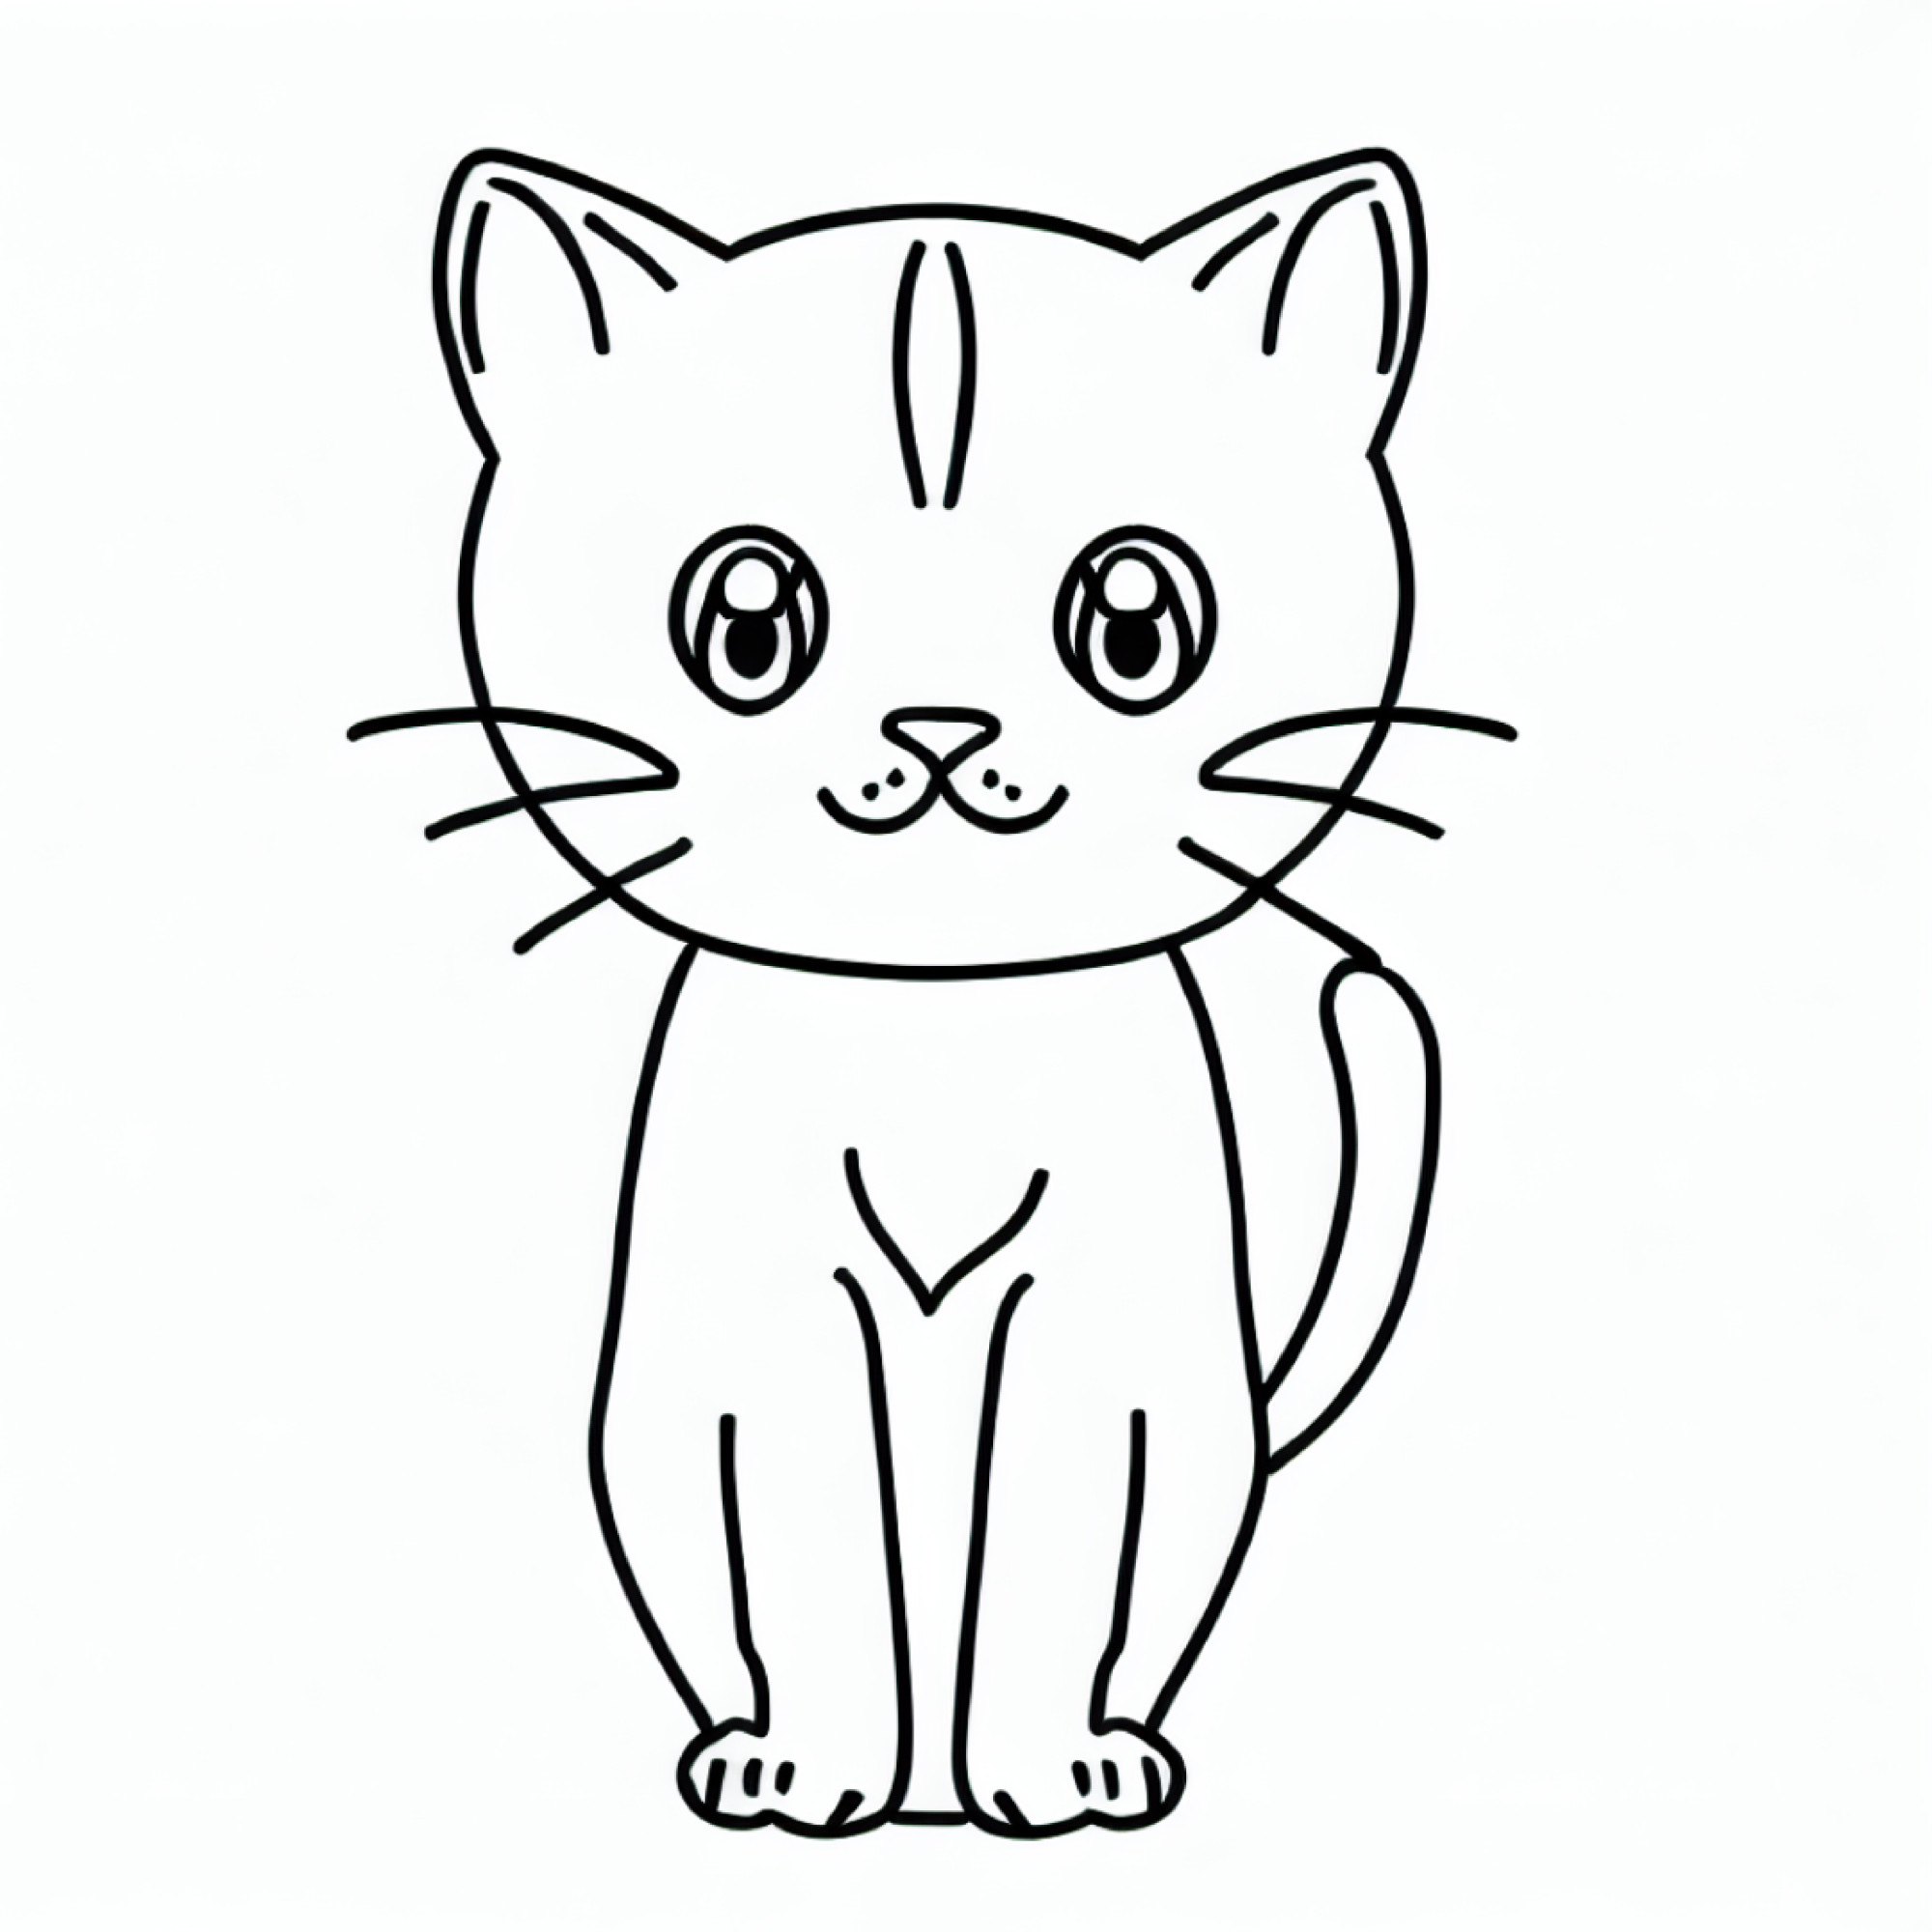 Раскраска для детей: загадочная кошка